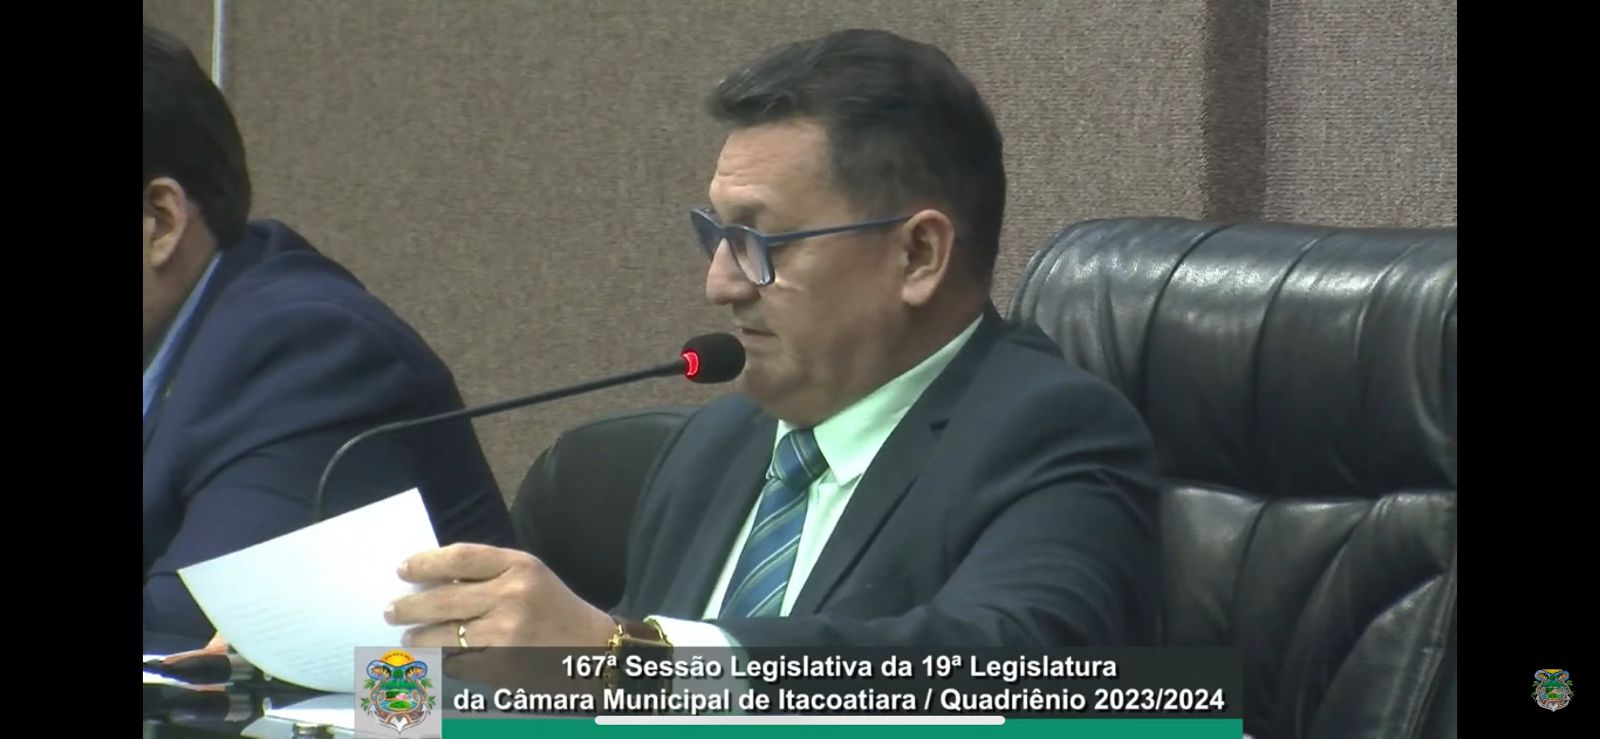 Resumo da 167ª Sessão Legislativa da 19ª Legislatura da Câmara Municipal de Itacoatiara / Quadriênio 2023/2024